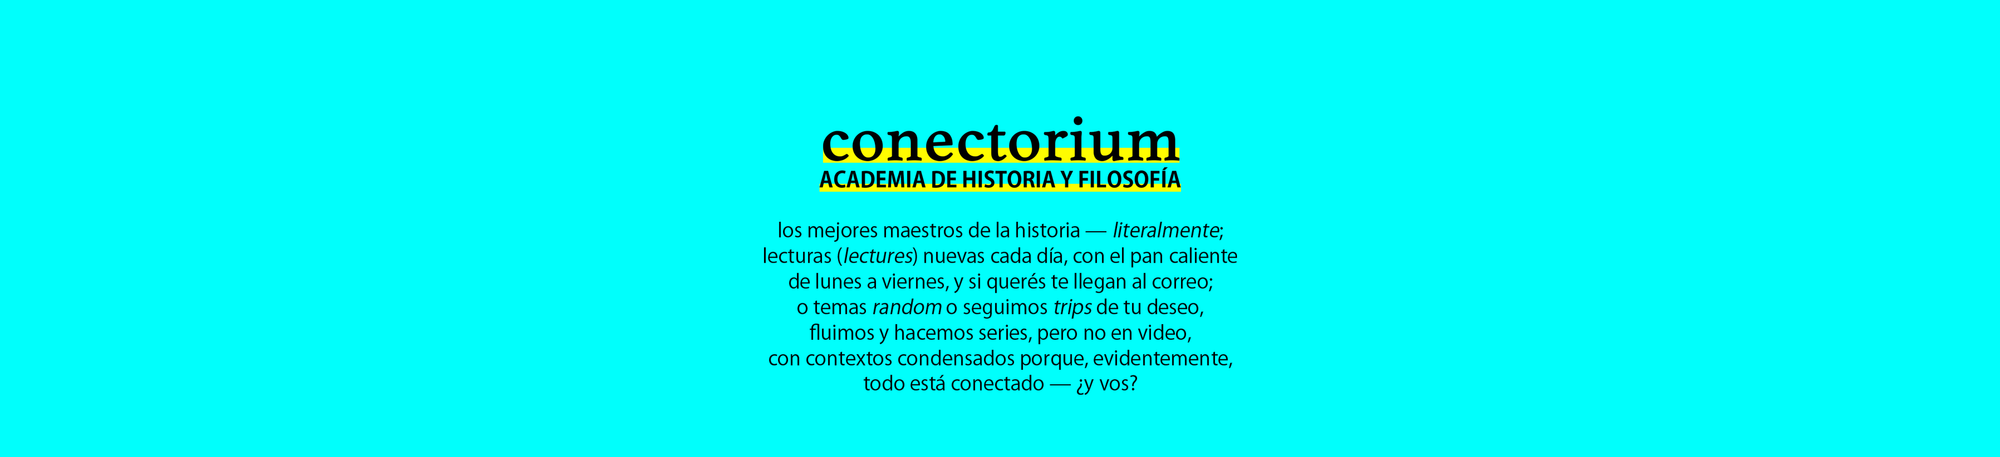 Conectorium